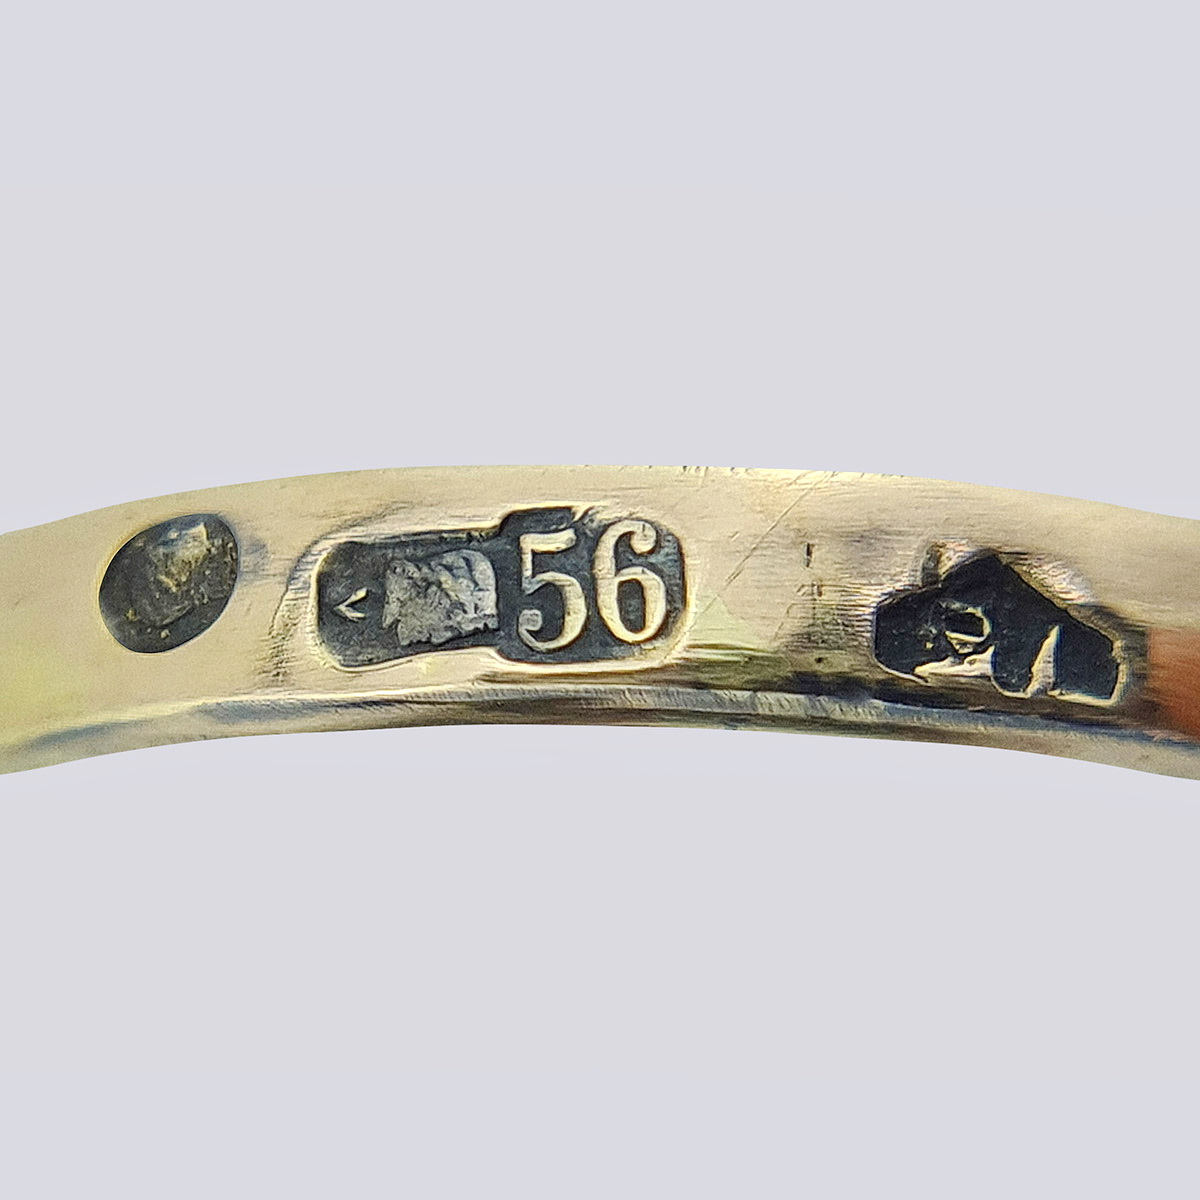 Антикварное золотое кольцо «Ветка» 56 пробы с бриллиантами старой огранки